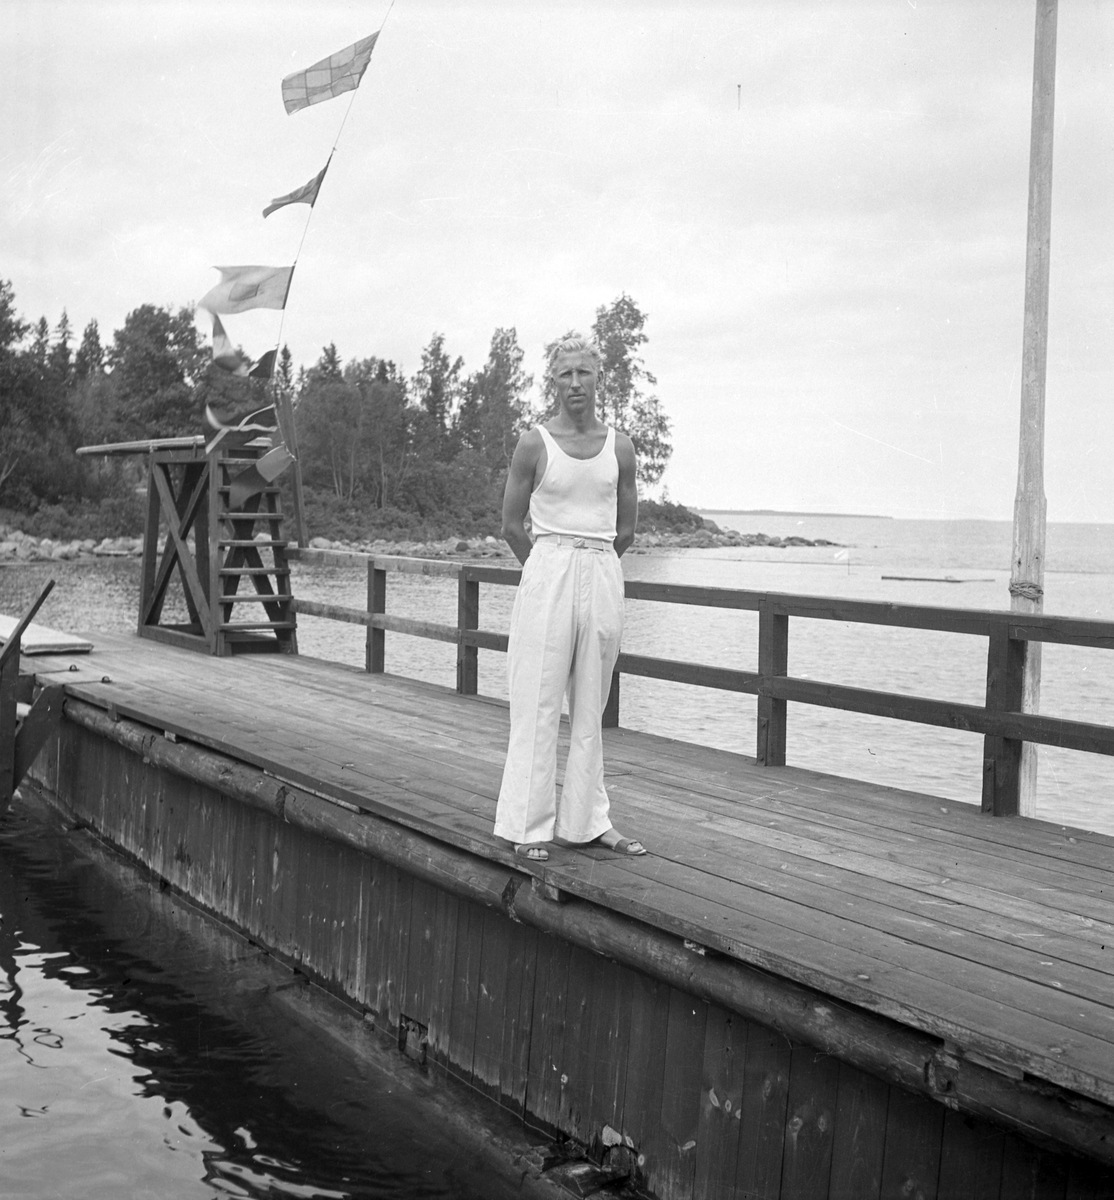 Furuviksparken invigdes pingstdagen 1936.

Nöjesfältet, badplatsen Sandvik och djurparken gjordes i ordning.

Badplatsen Sandvik

